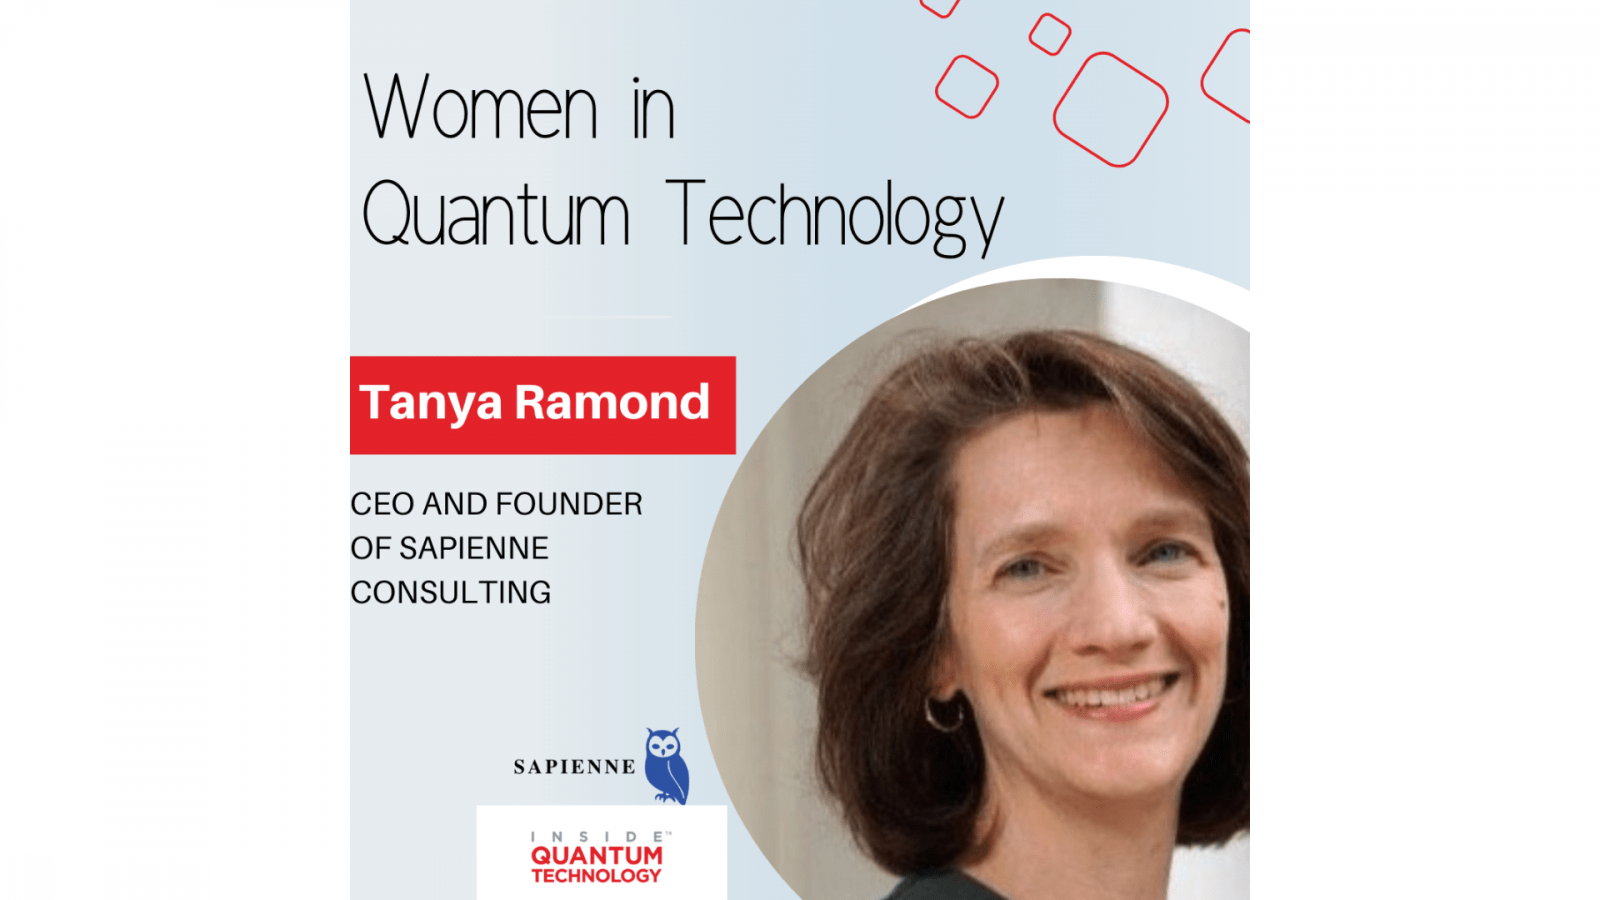 Sapienne Consulting'in CEO'su ve Kurucusu Tanya Ramond, geçmişini ve kuantum endüstrisine olan yolculuğunu anlatıyor.